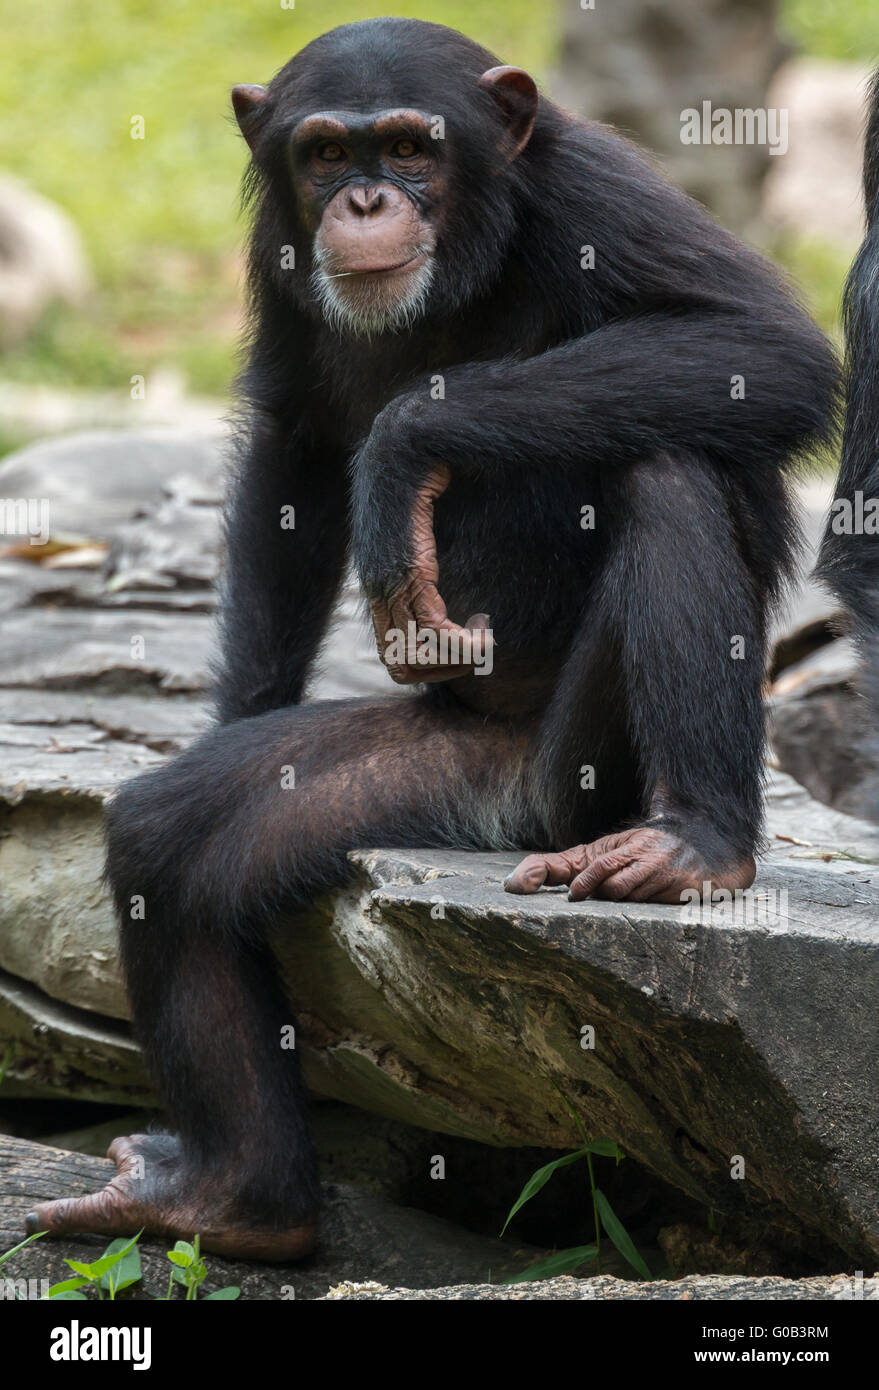 A young male chimpanzee (Pan troglodytes) sitting, staring at the camera. Stock Photo